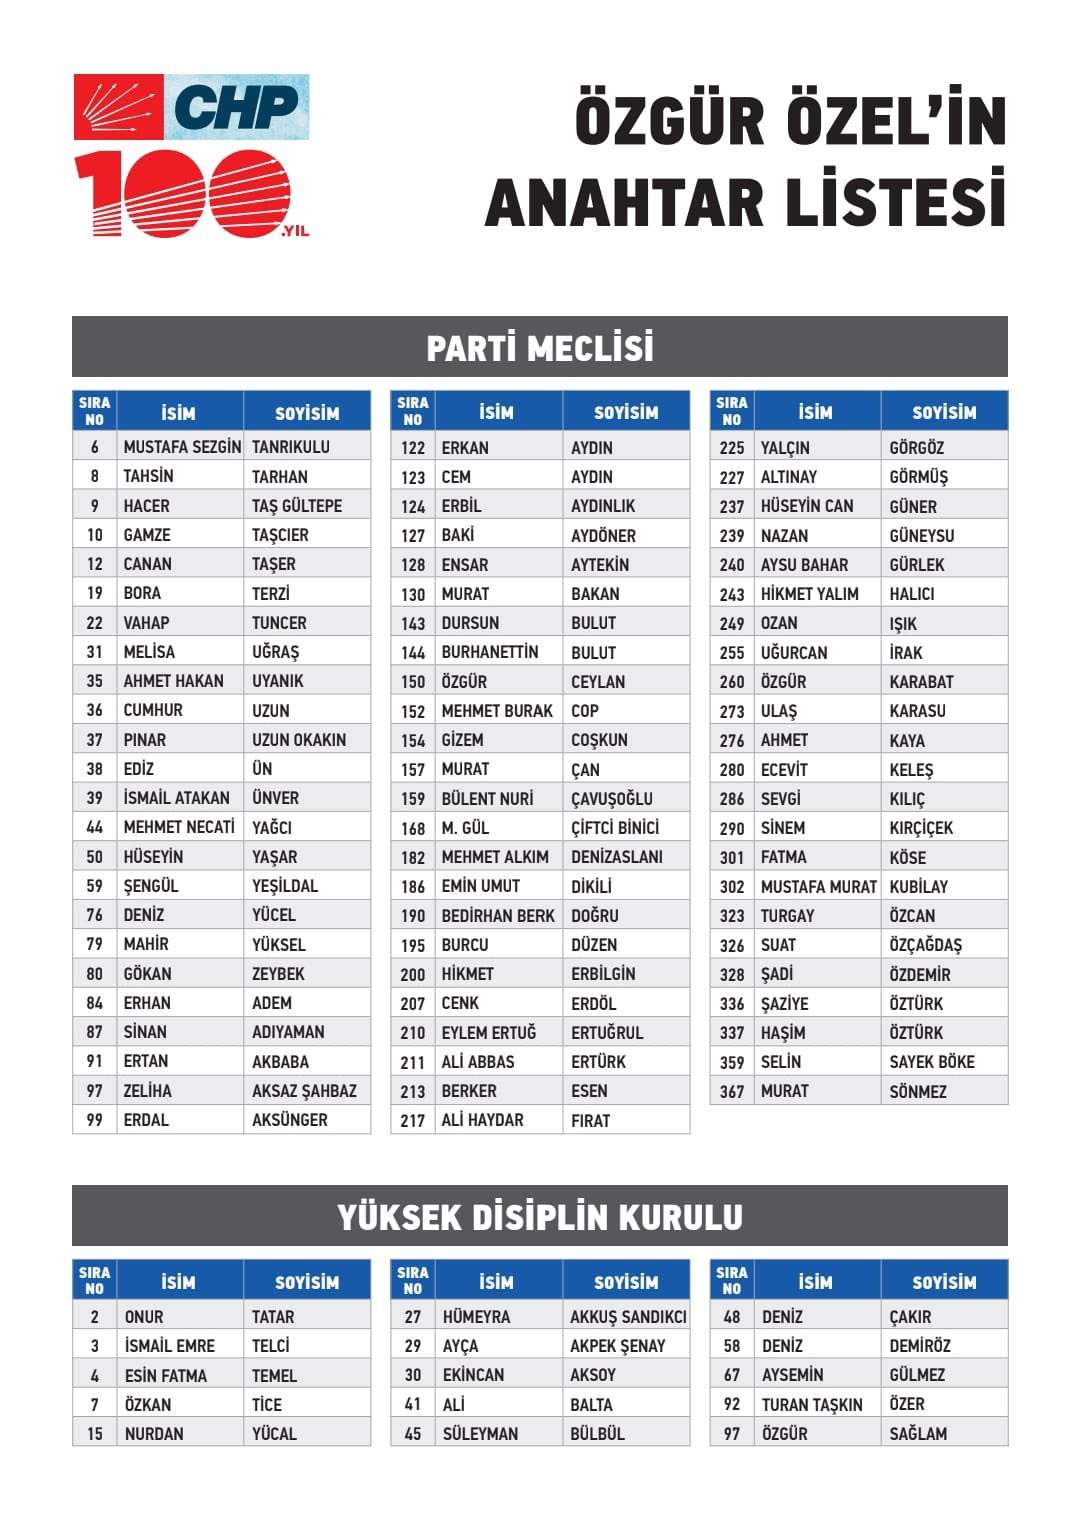 İşte Özgür Özel'in 'A Takımı' listesi - CHP Genel Başkanı seçilen Özgür Özel'in Parti Meclisi için anahtar listesinin tamamı belli oldu.